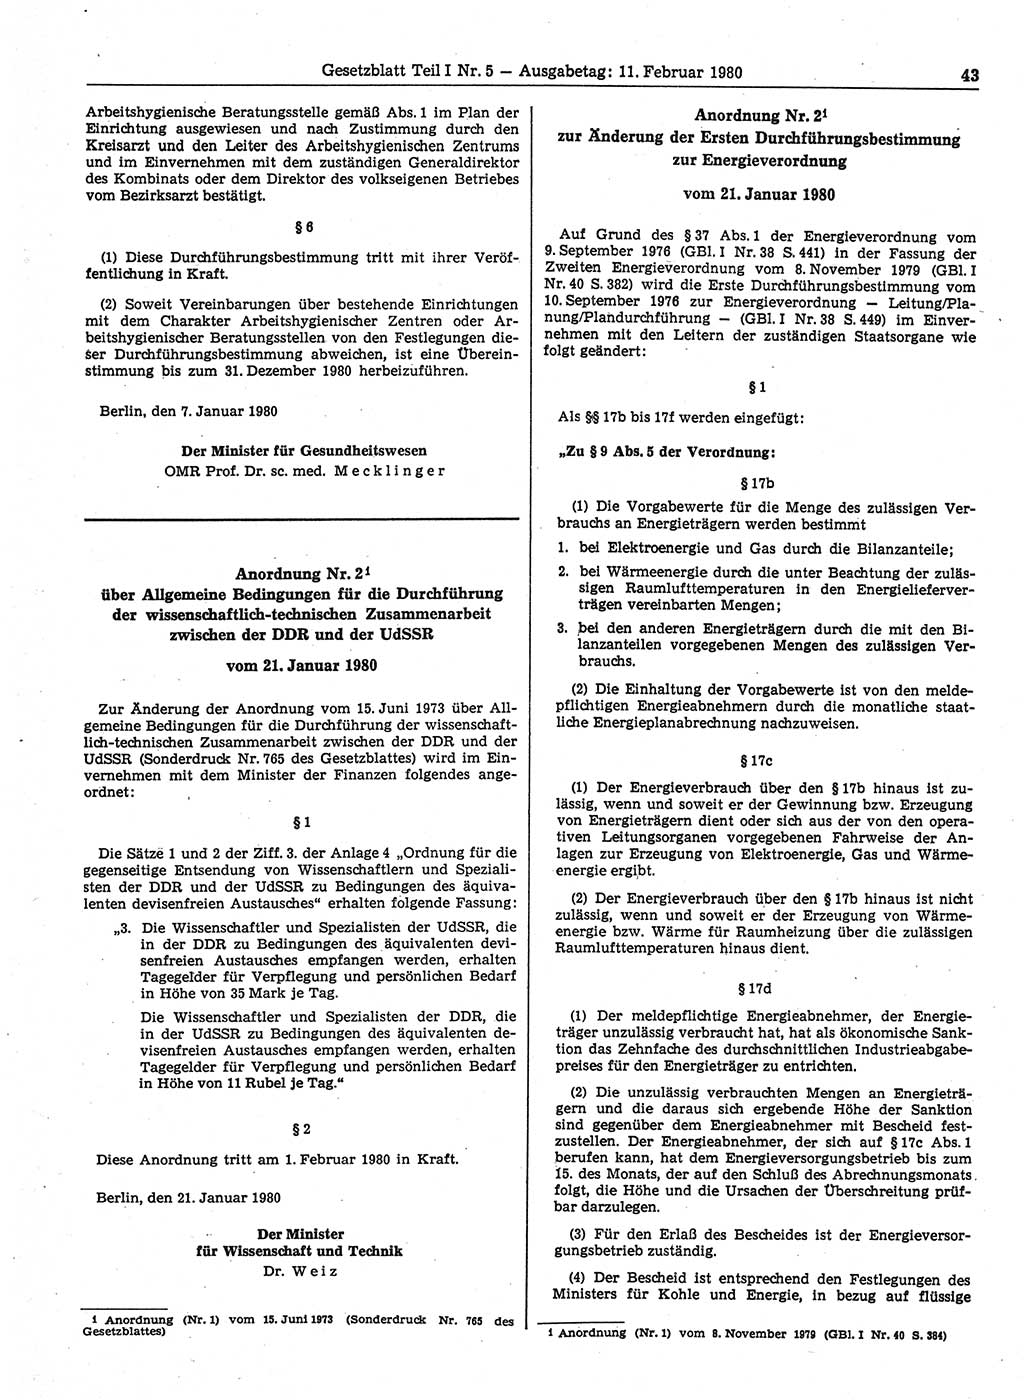 Gesetzblatt (GBl.) der Deutschen Demokratischen Republik (DDR) Teil Ⅰ 1980, Seite 43 (GBl. DDR Ⅰ 1980, S. 43)